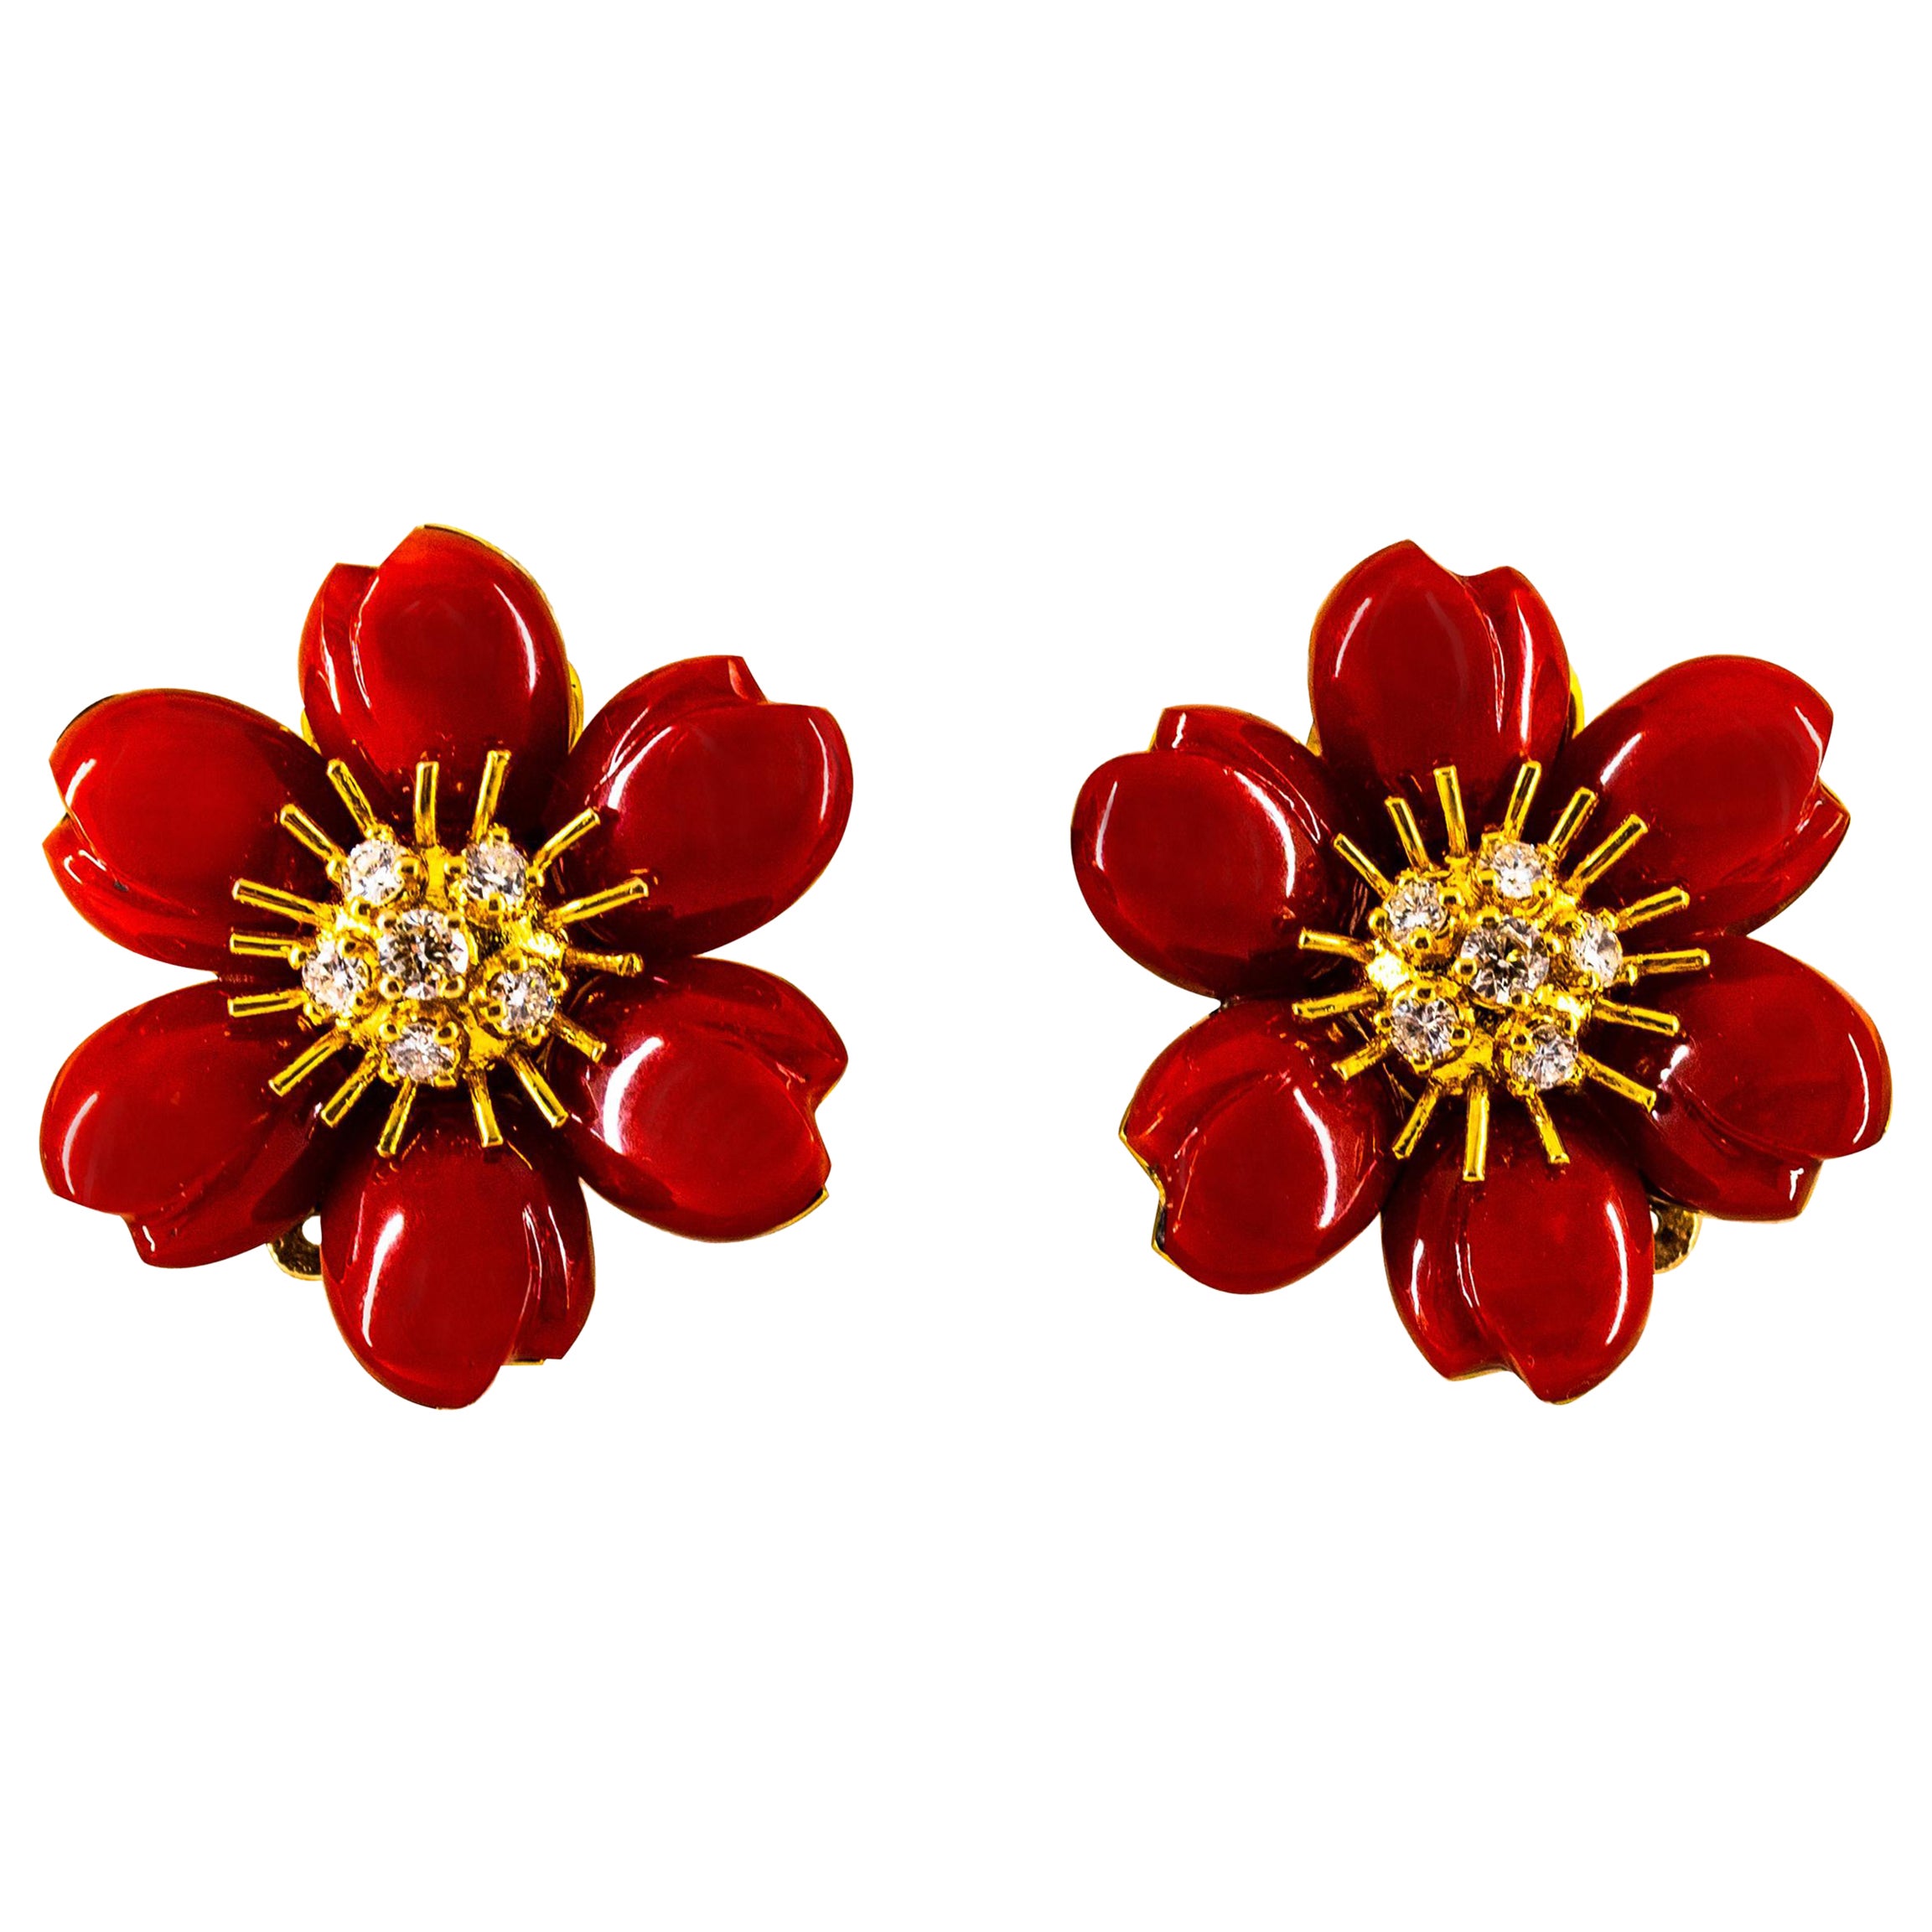 Orecchini "Fiori" in stile Art Nouveau Mediterraneo con corallo rosso e diamanti bianchi in oro giallo